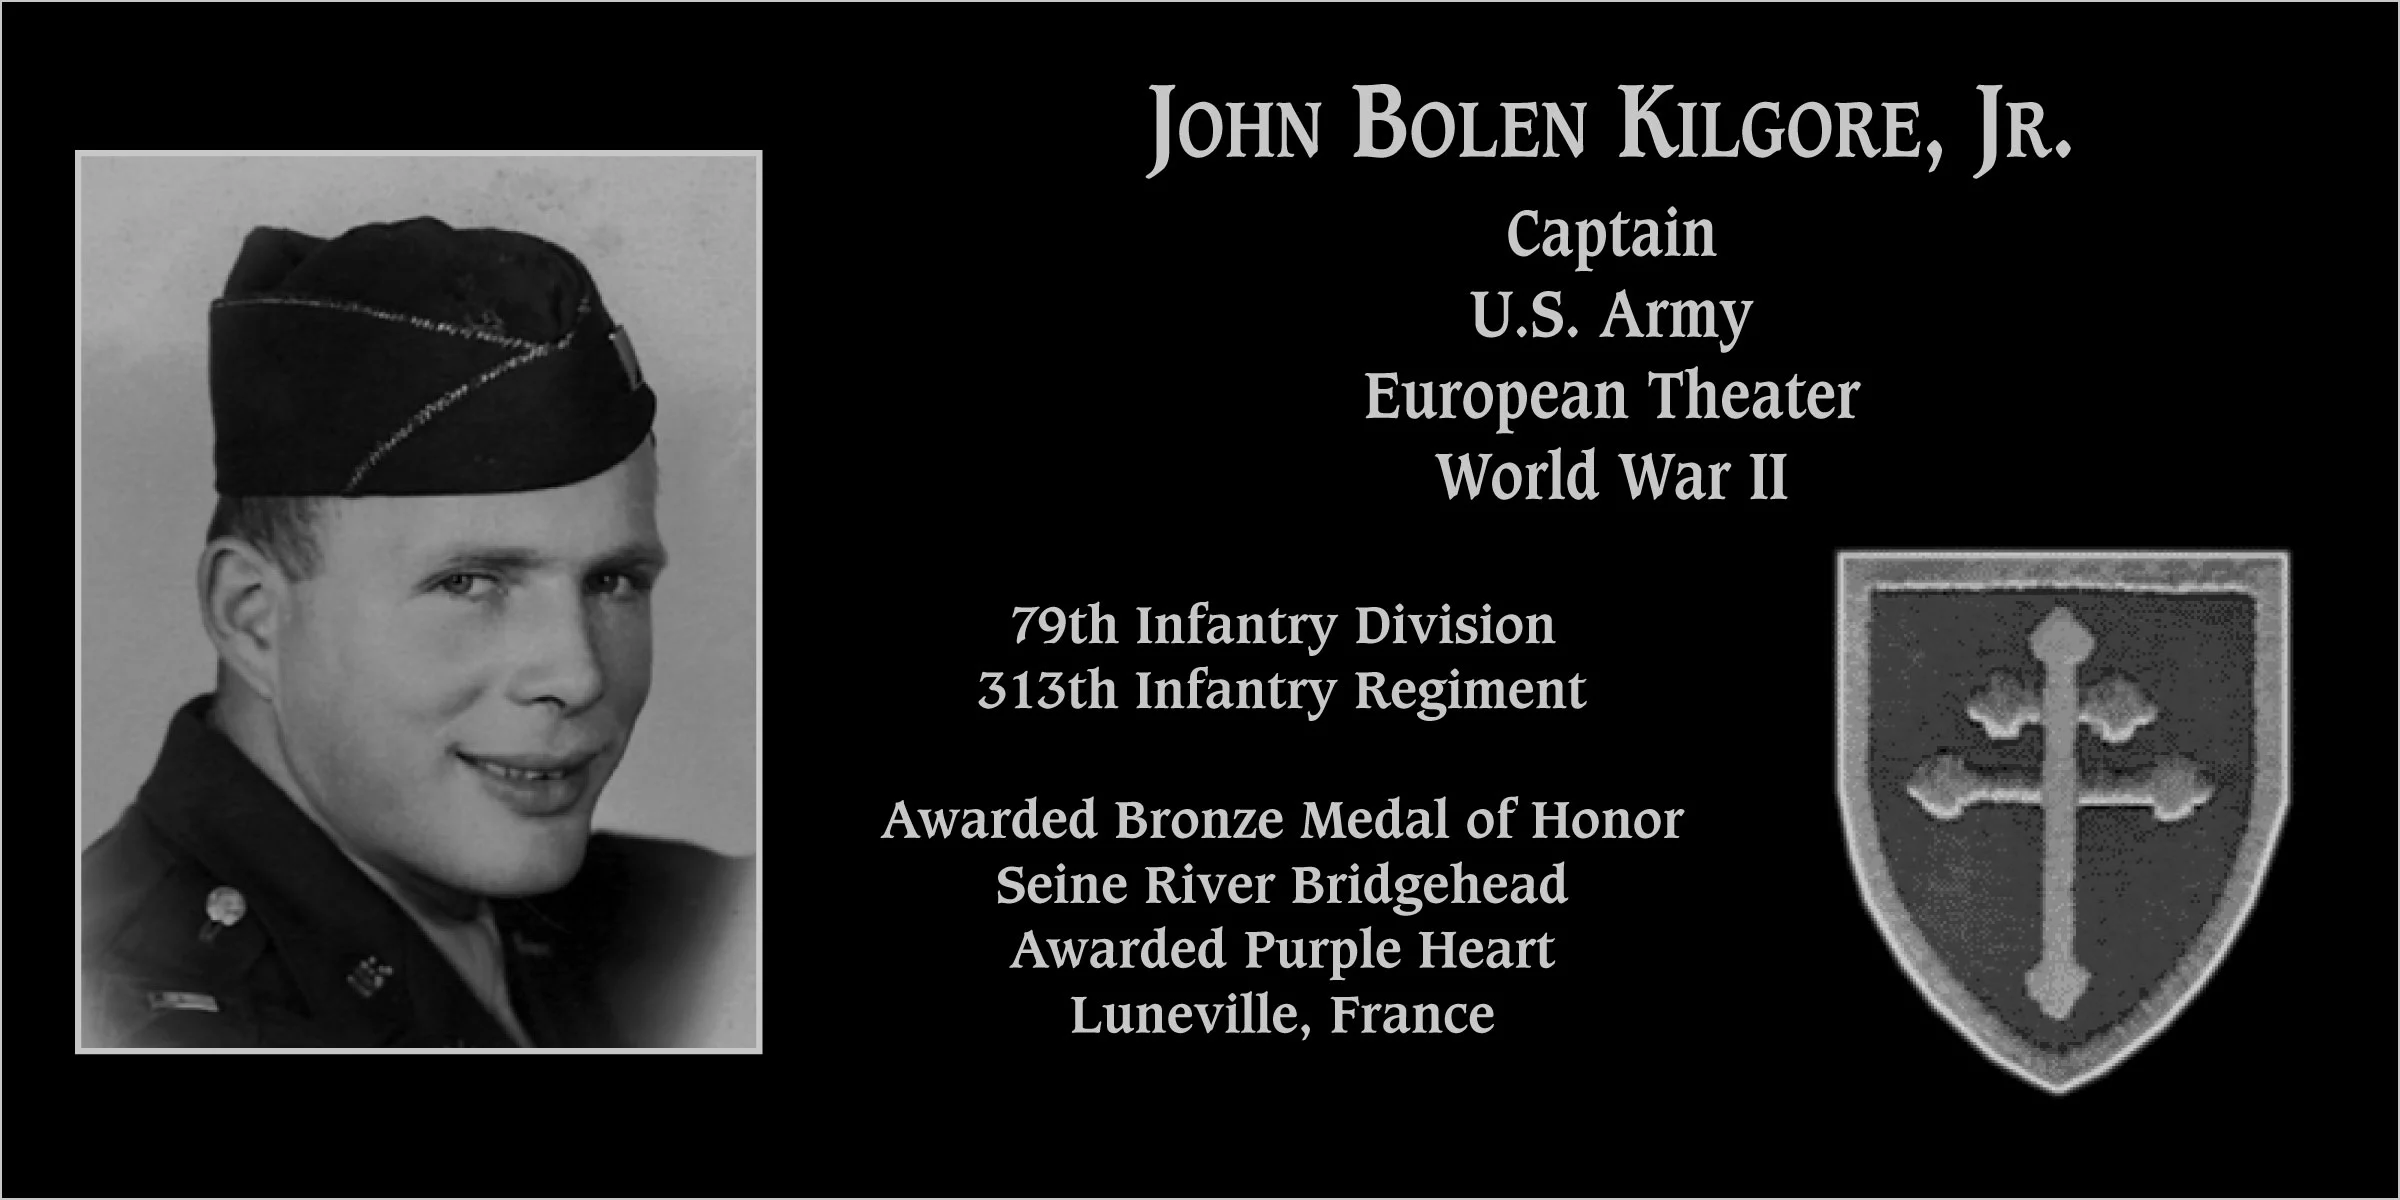 John Bolen Kilgore jr